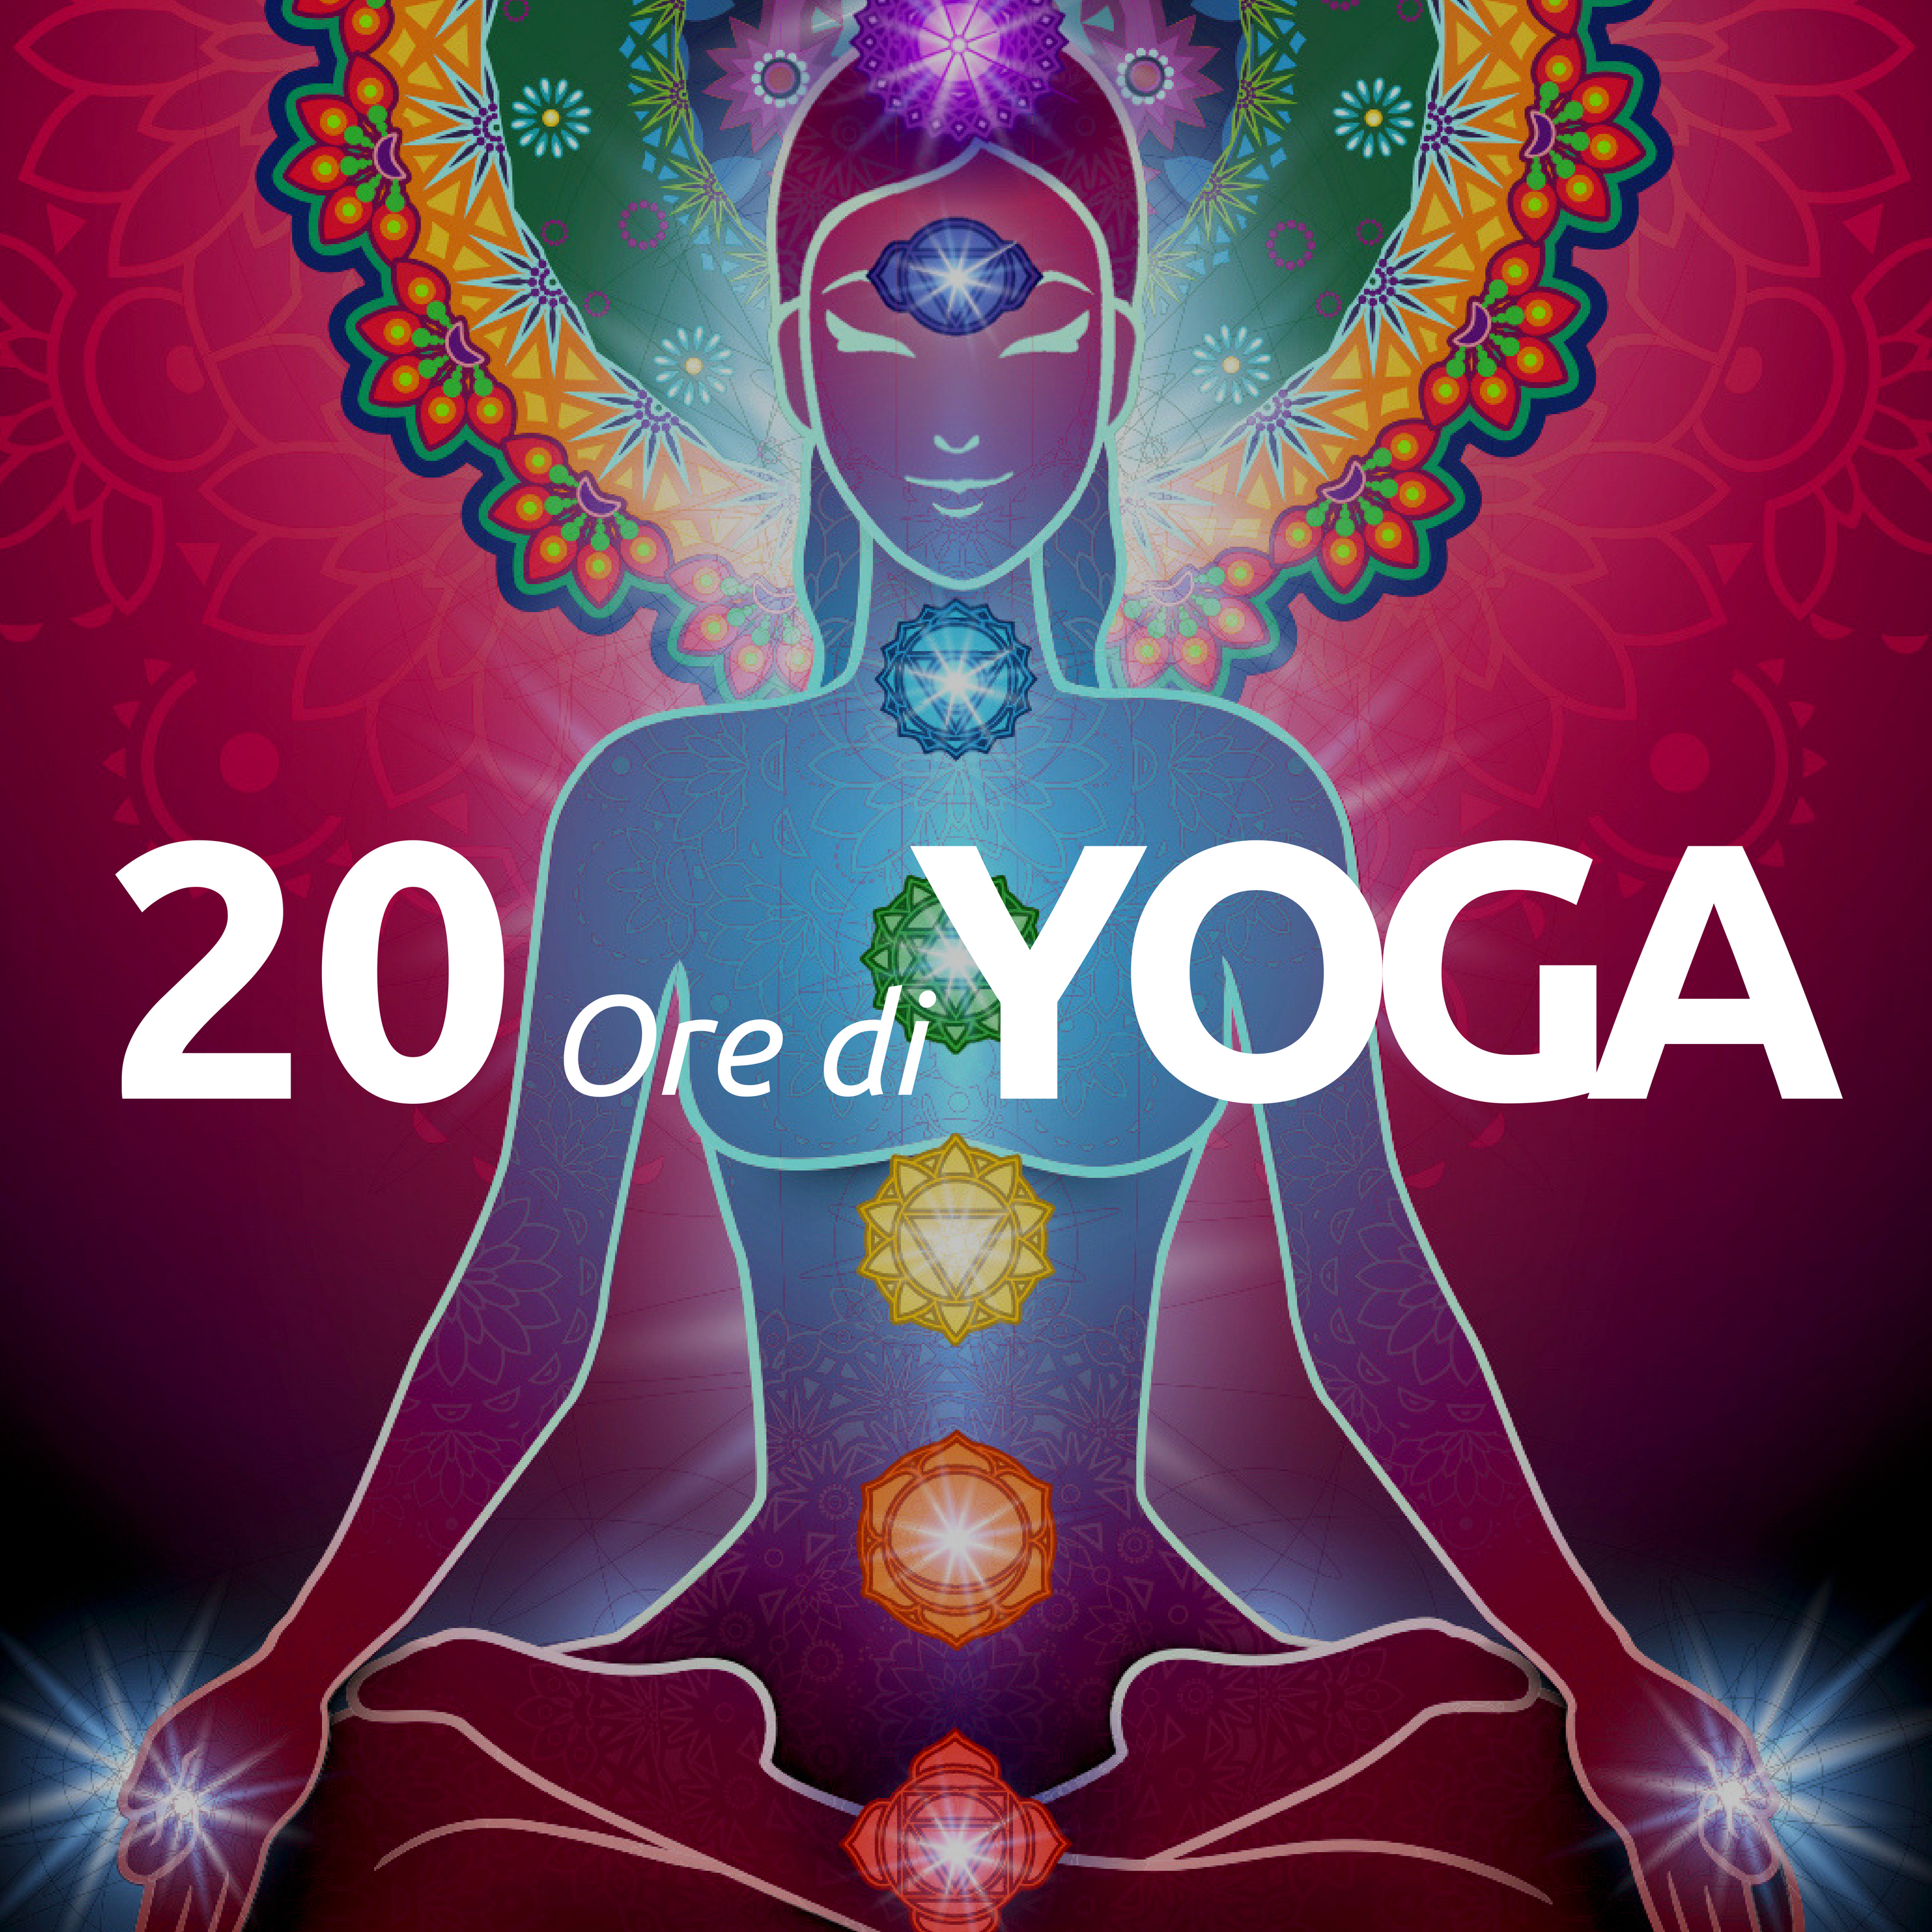 20 Ore di Yoga: la Miglior Musica per Lezioni di Yoga